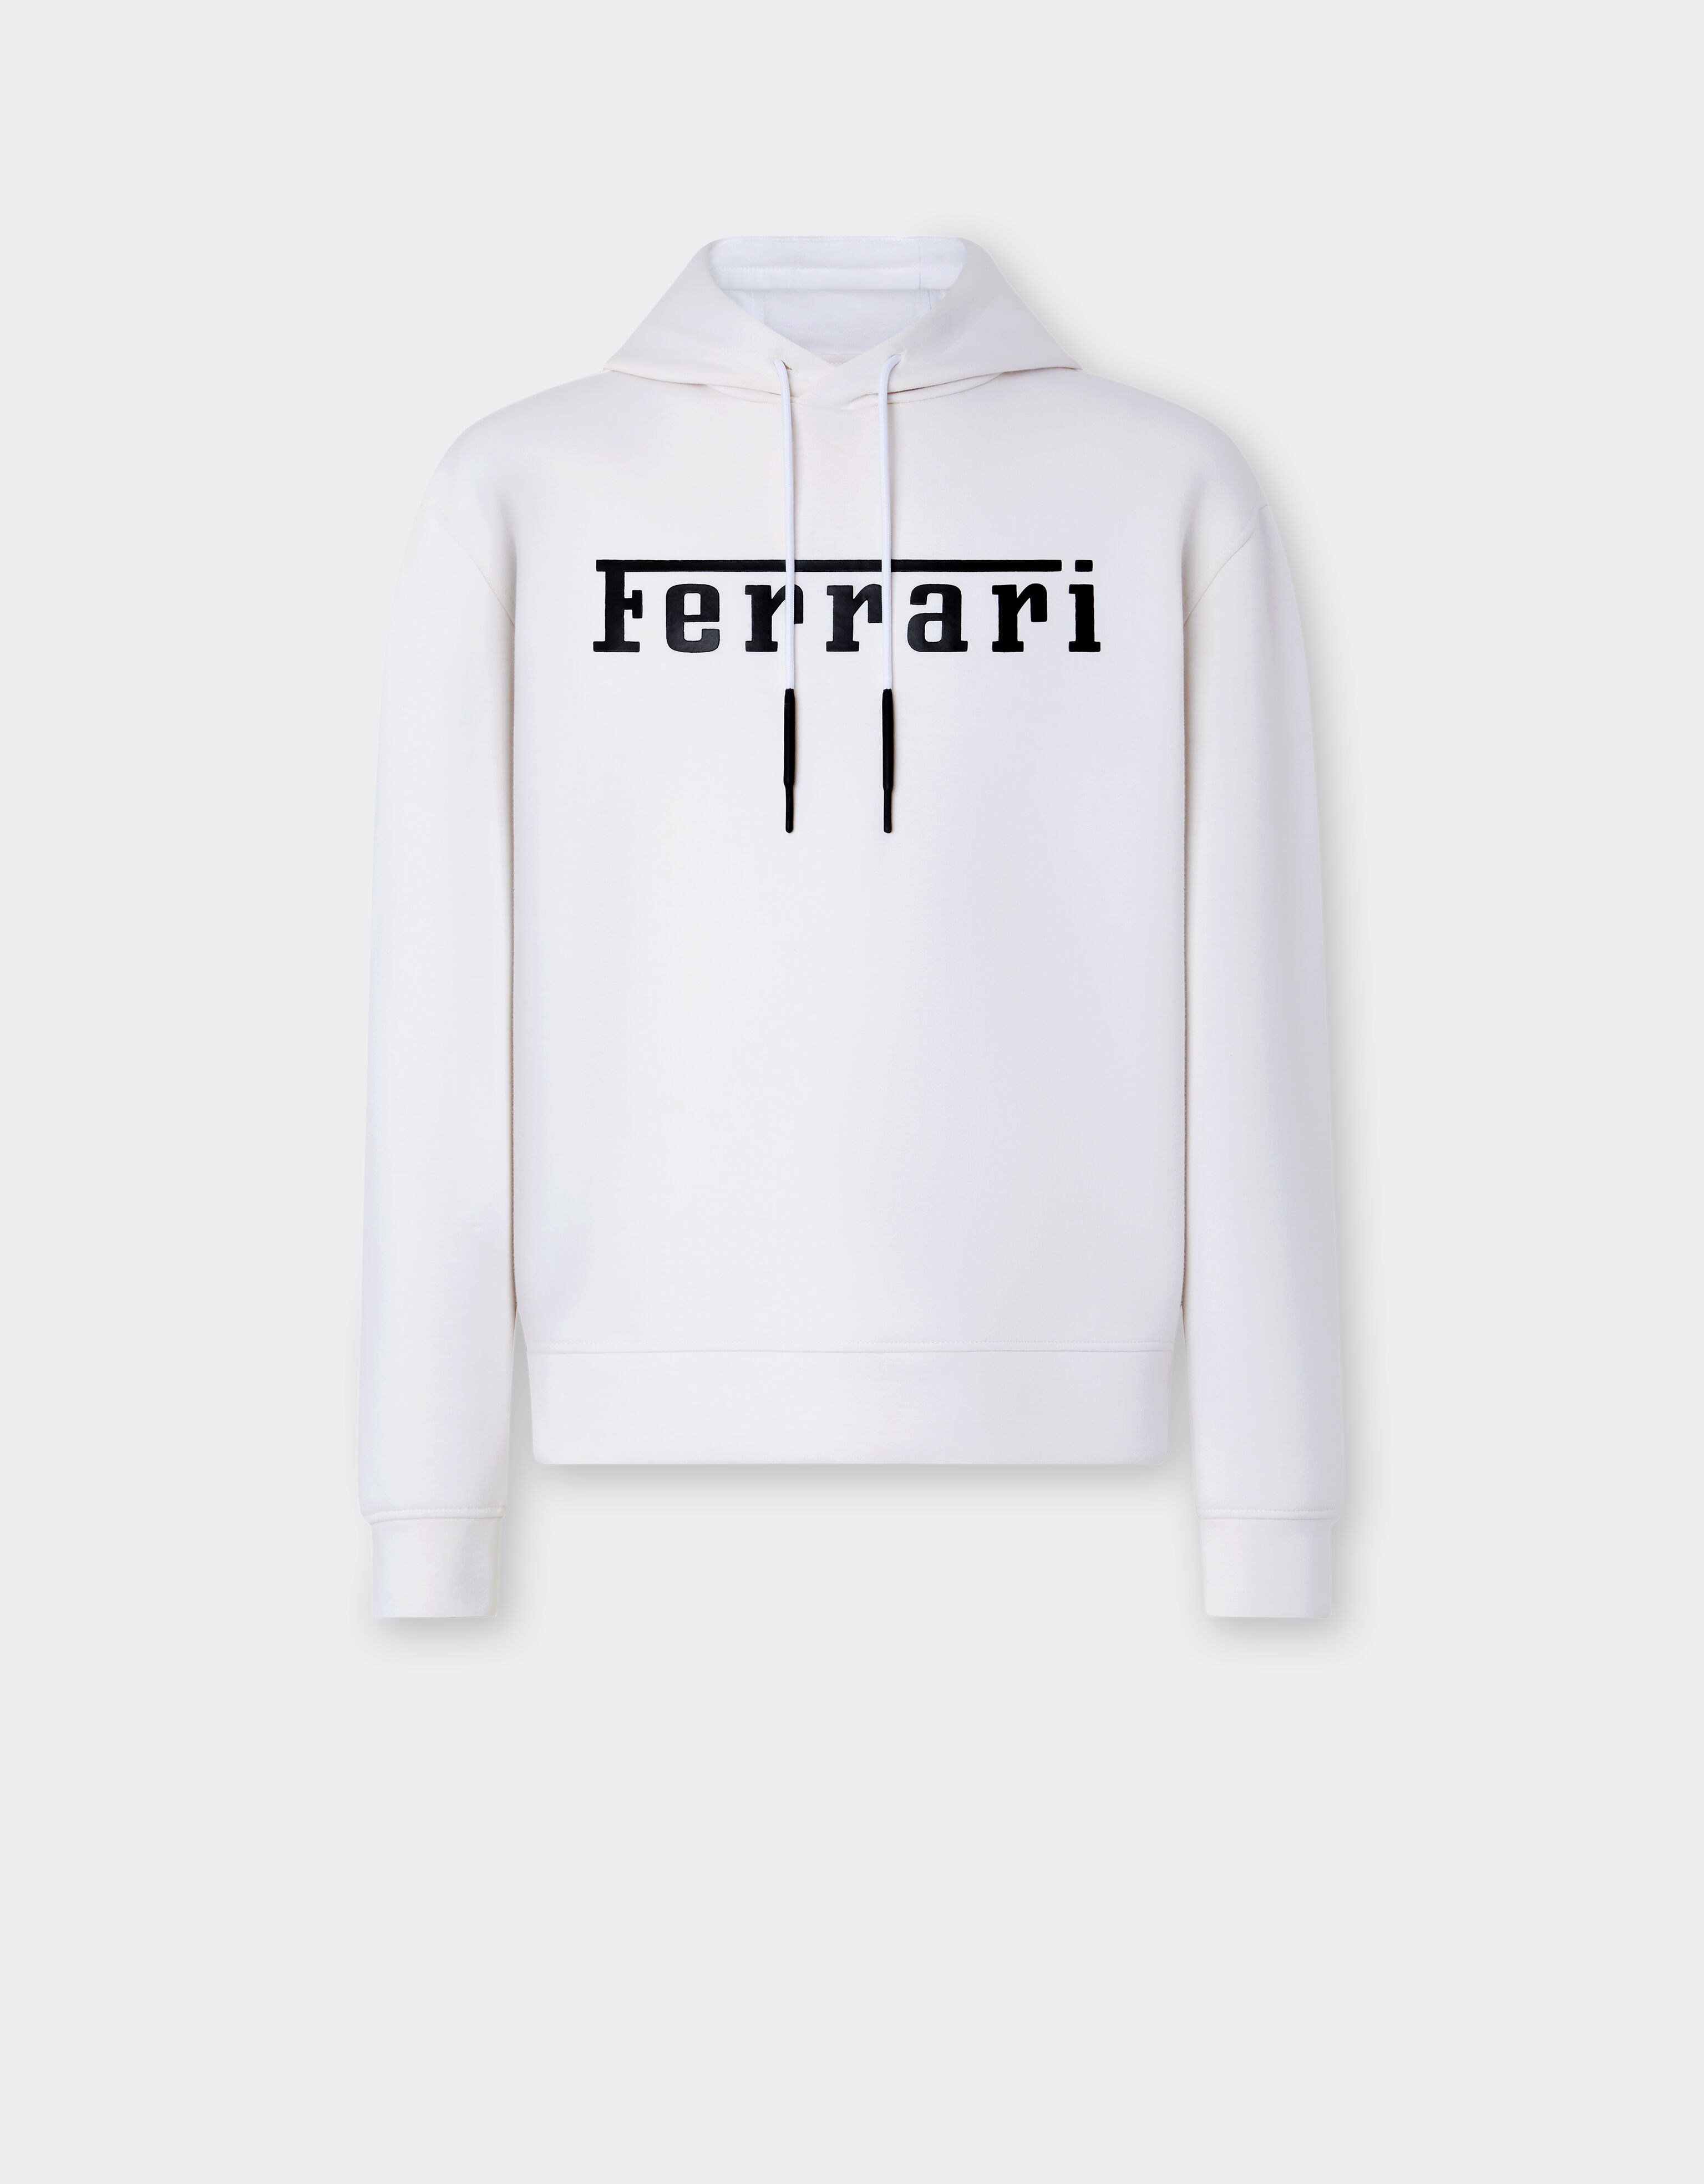 Ferrari Scuba knit sweatshirt with contrast Ferrari logo Optical White 48490f